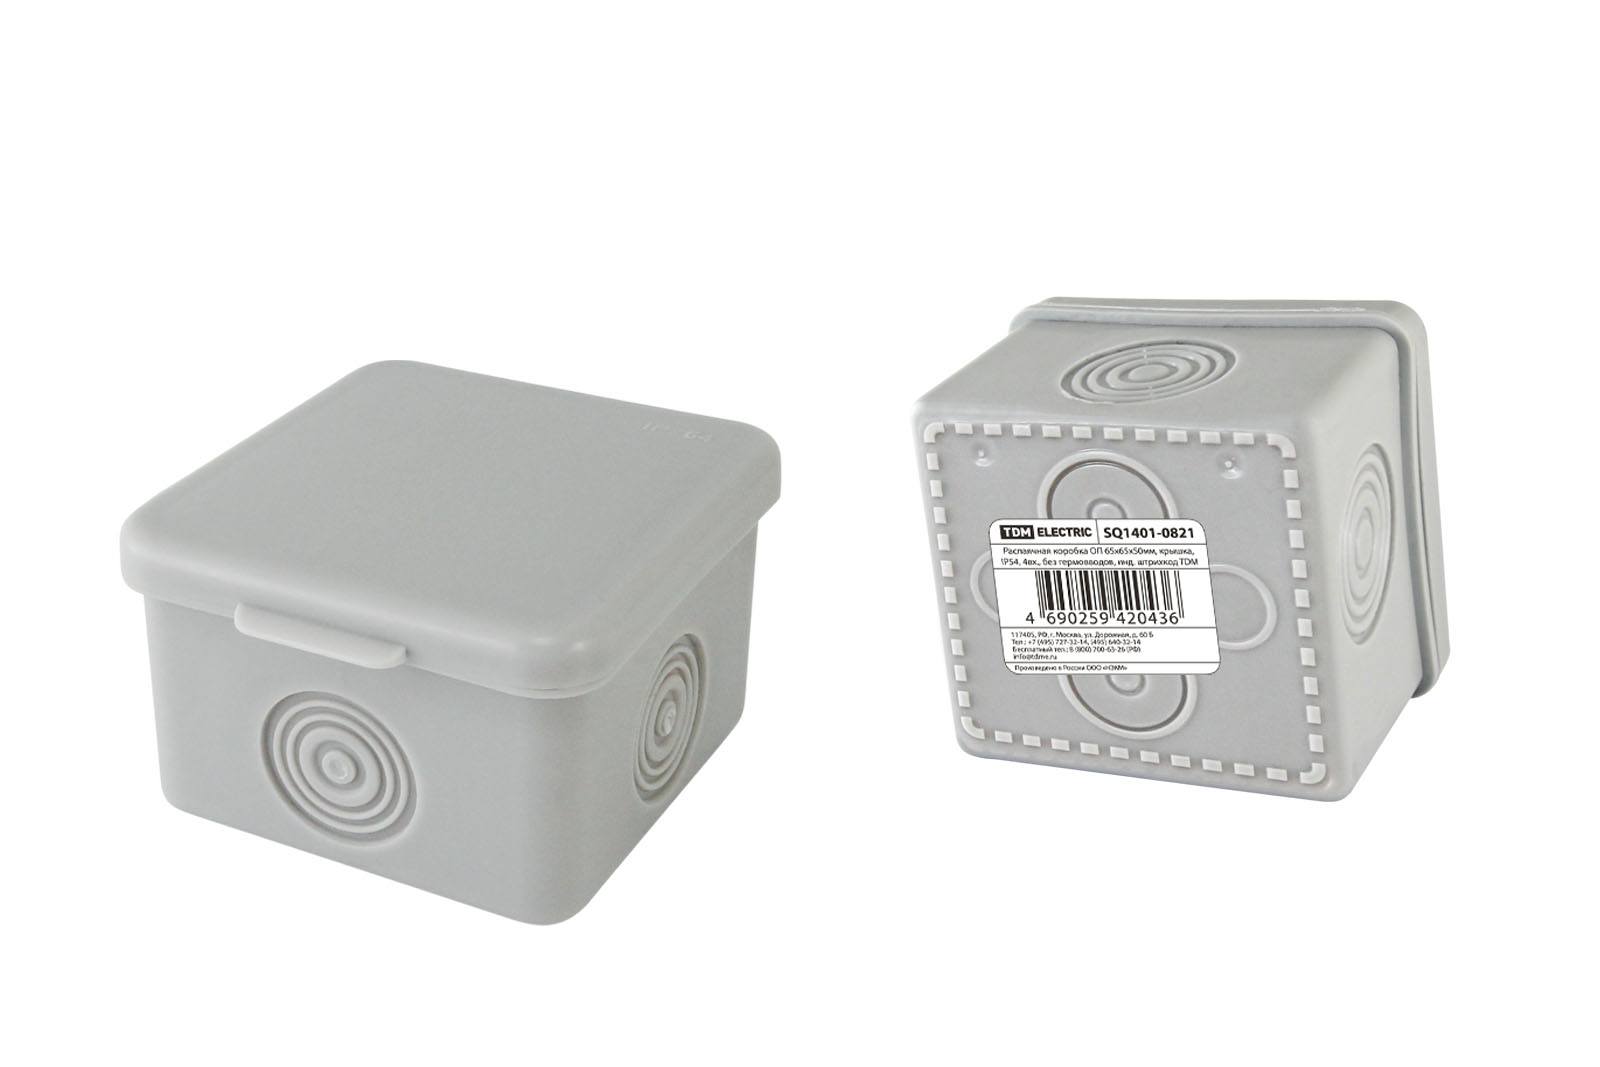 Коробка распаячная квадратная 6.5 см x 6.5 см, глубина 5 см, наружный монтаж, IP54, вводов:4, наличие сальников, серый, с крышкой, TDM (SQ1401-0821)